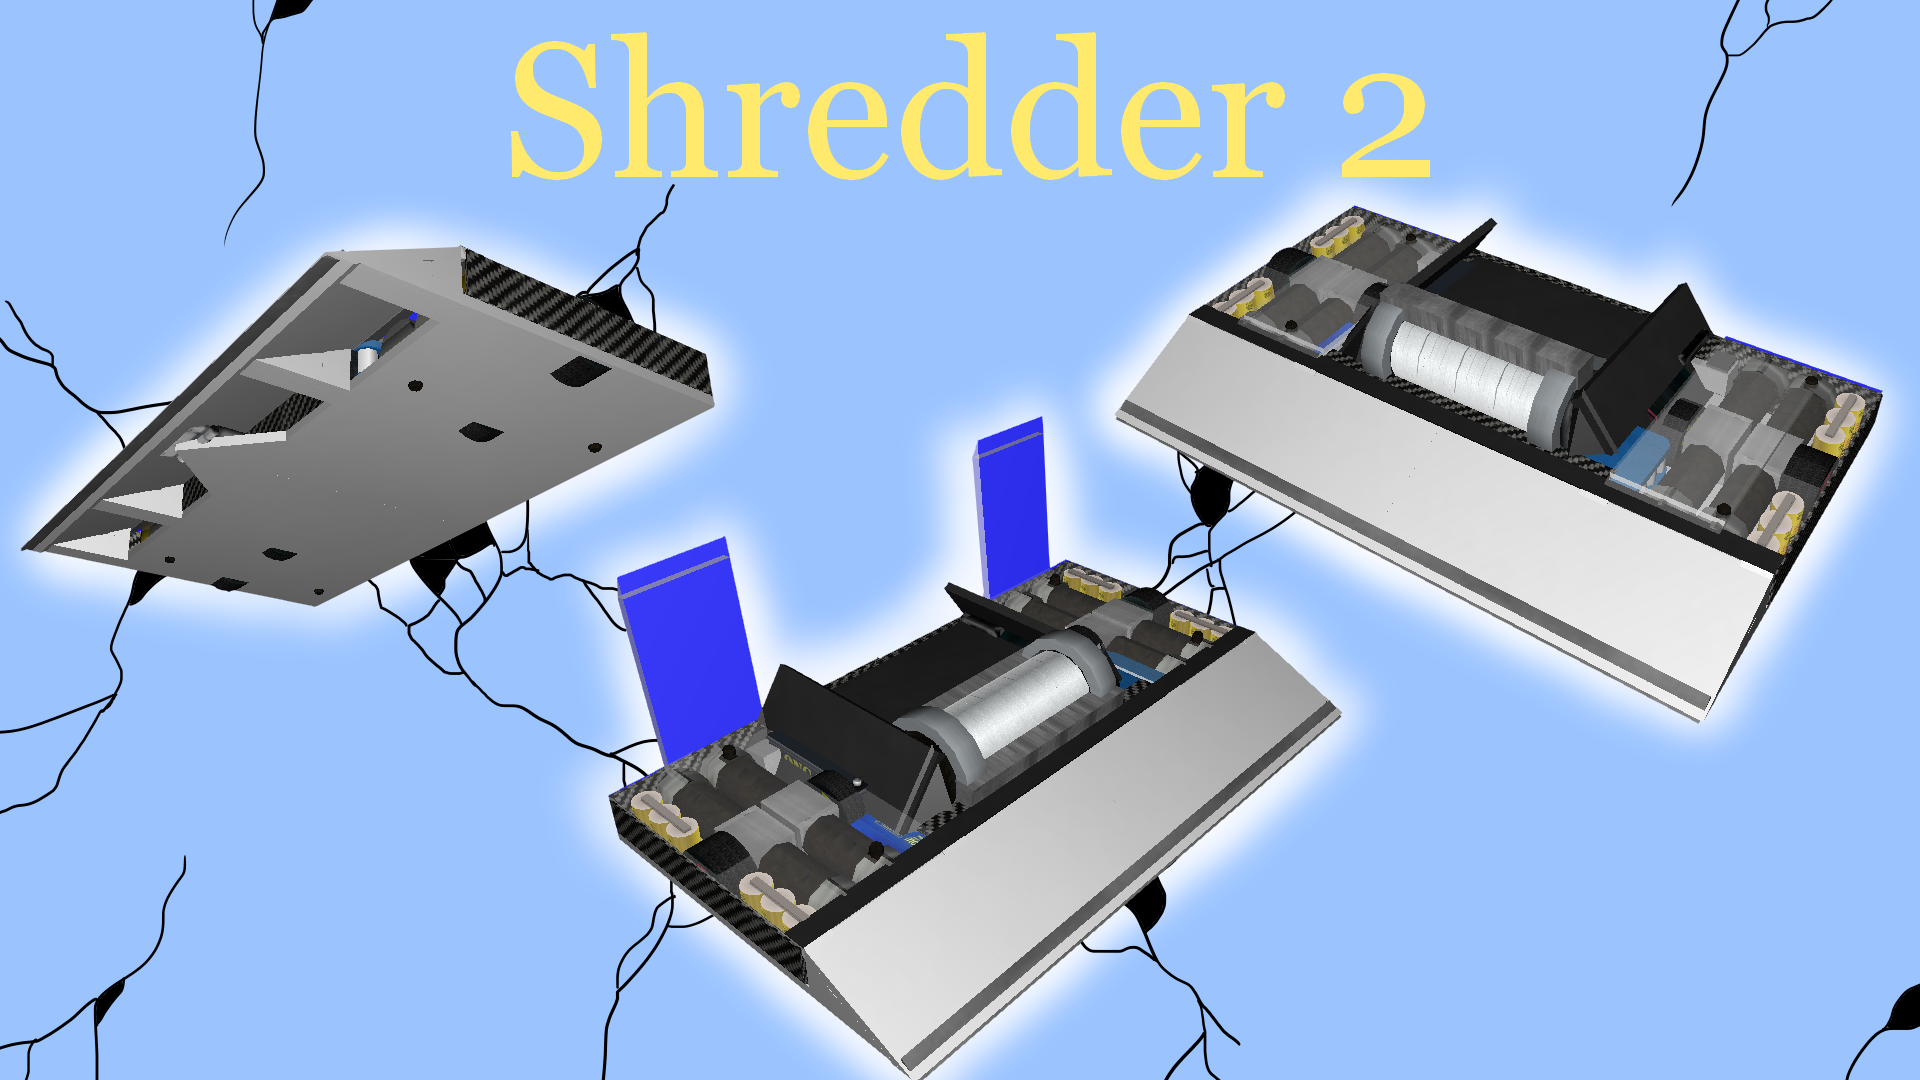 Shredder 2.png